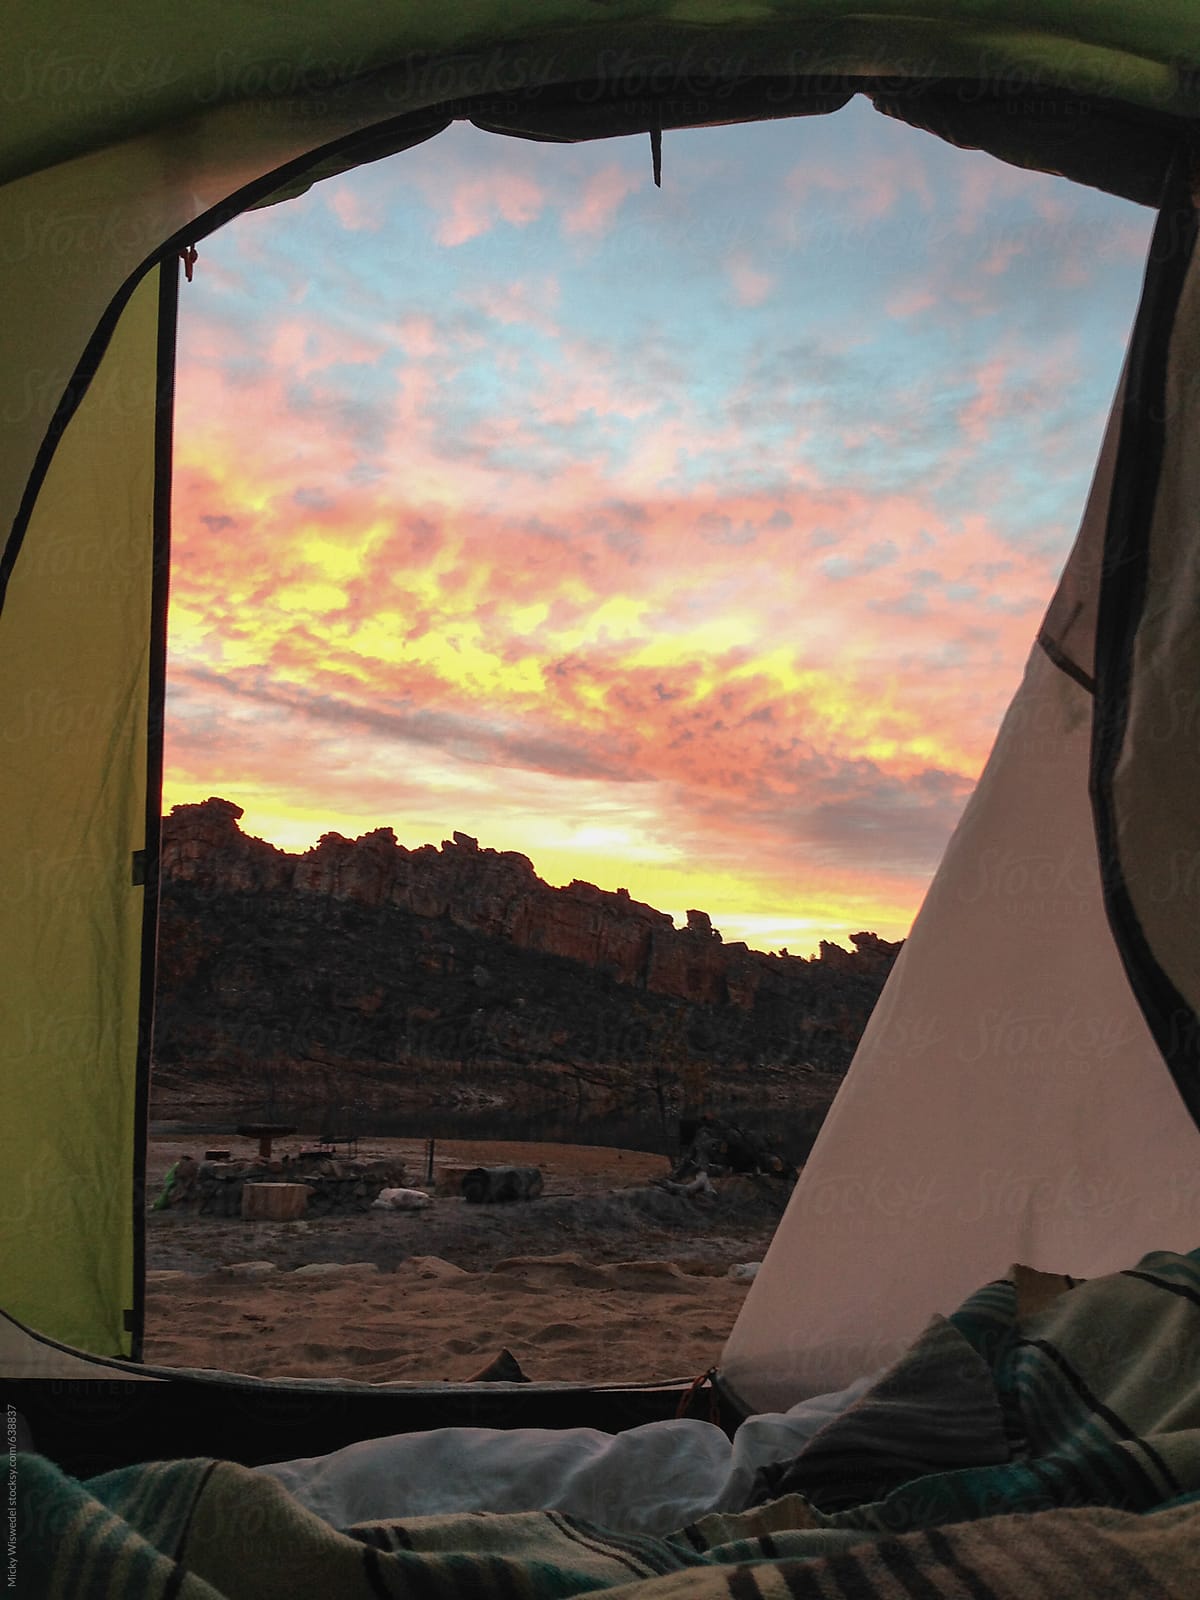 Dawn view through a camping tent